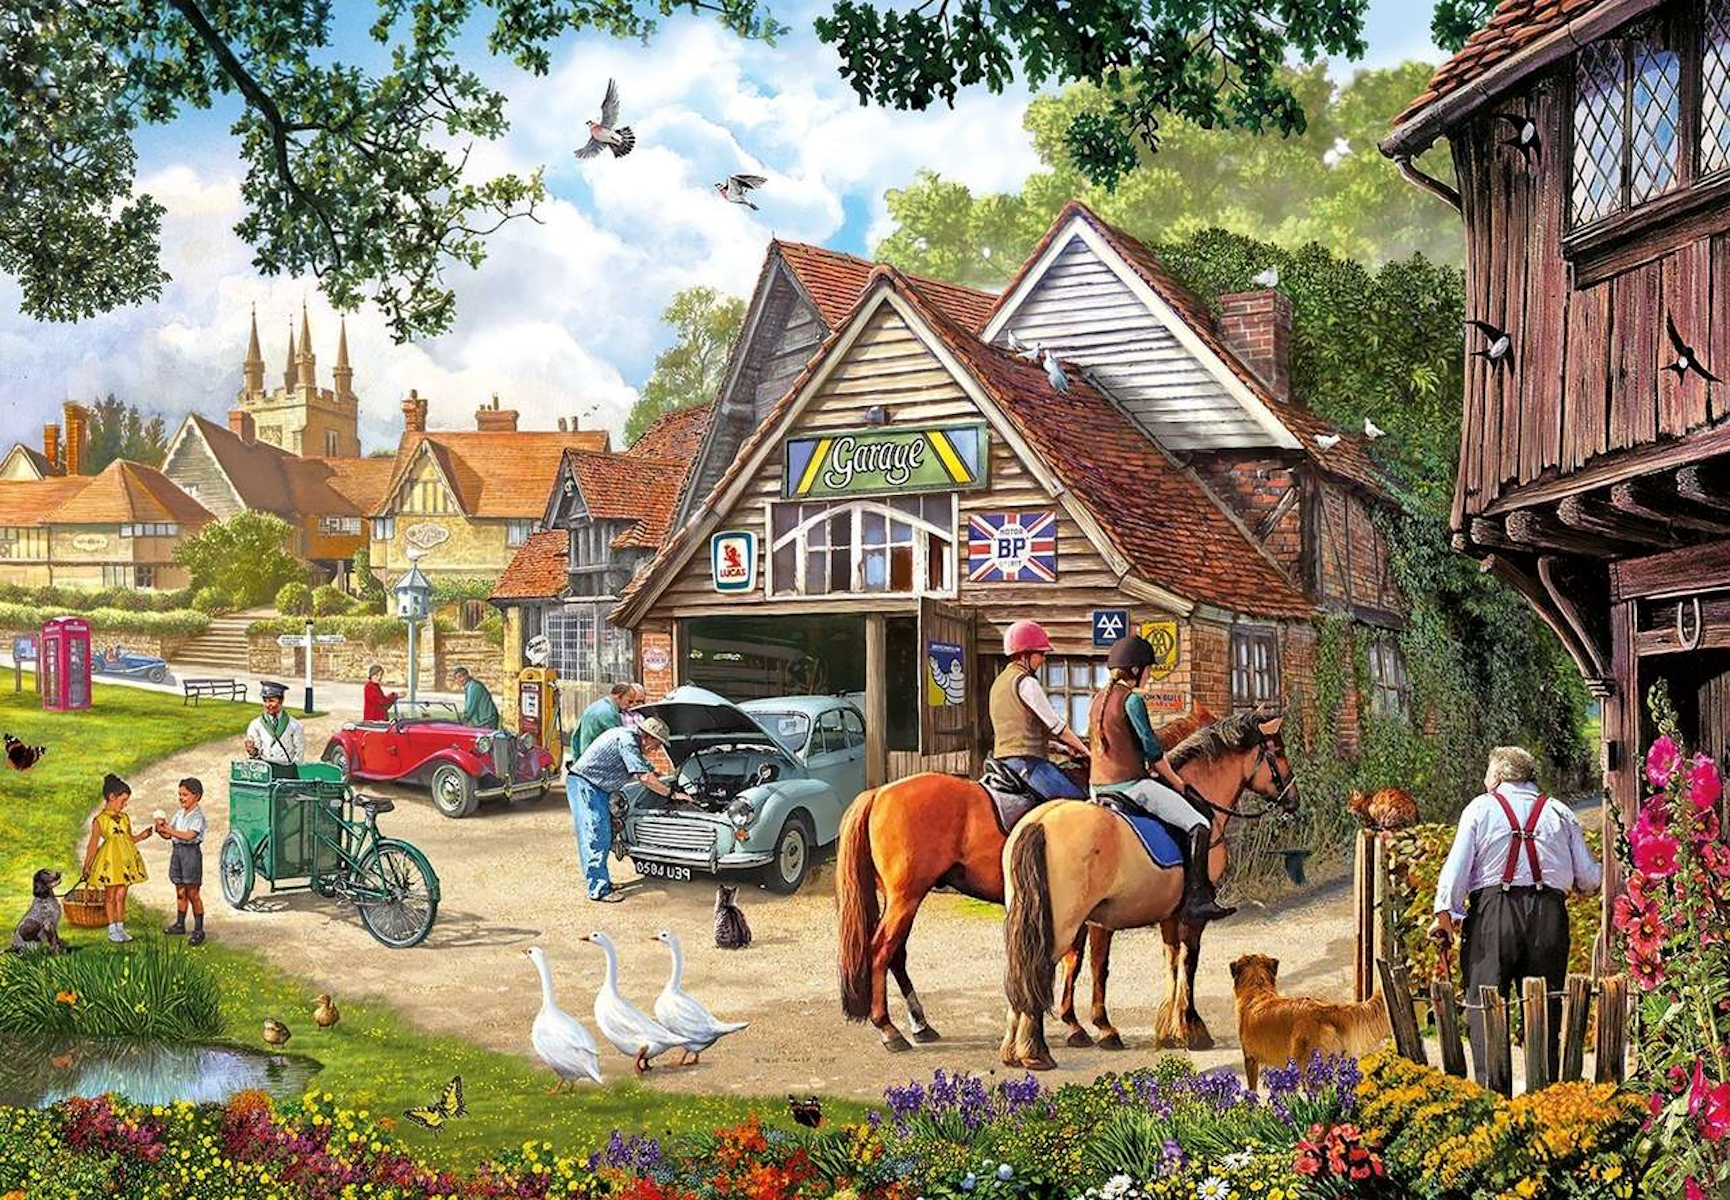 Village на английском. Художник Стив Крисп. Steve crisp картины. Английская деревня в живописи. Картины с большим количеством деталей.